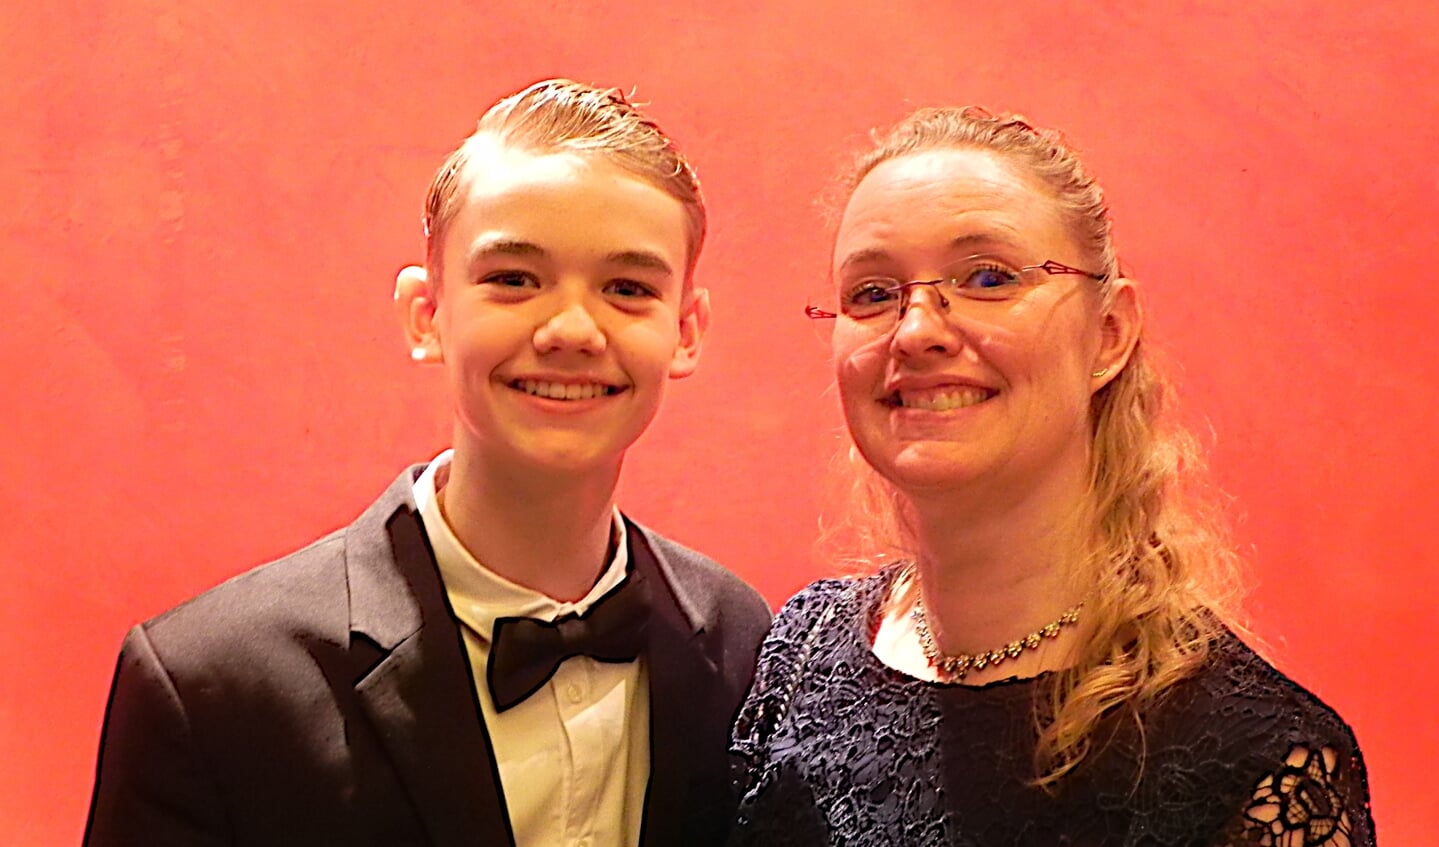 Moeder Angela is trots op haar zoon Quinn die tot Sporttalent van het jaar werd uitgeroepen.